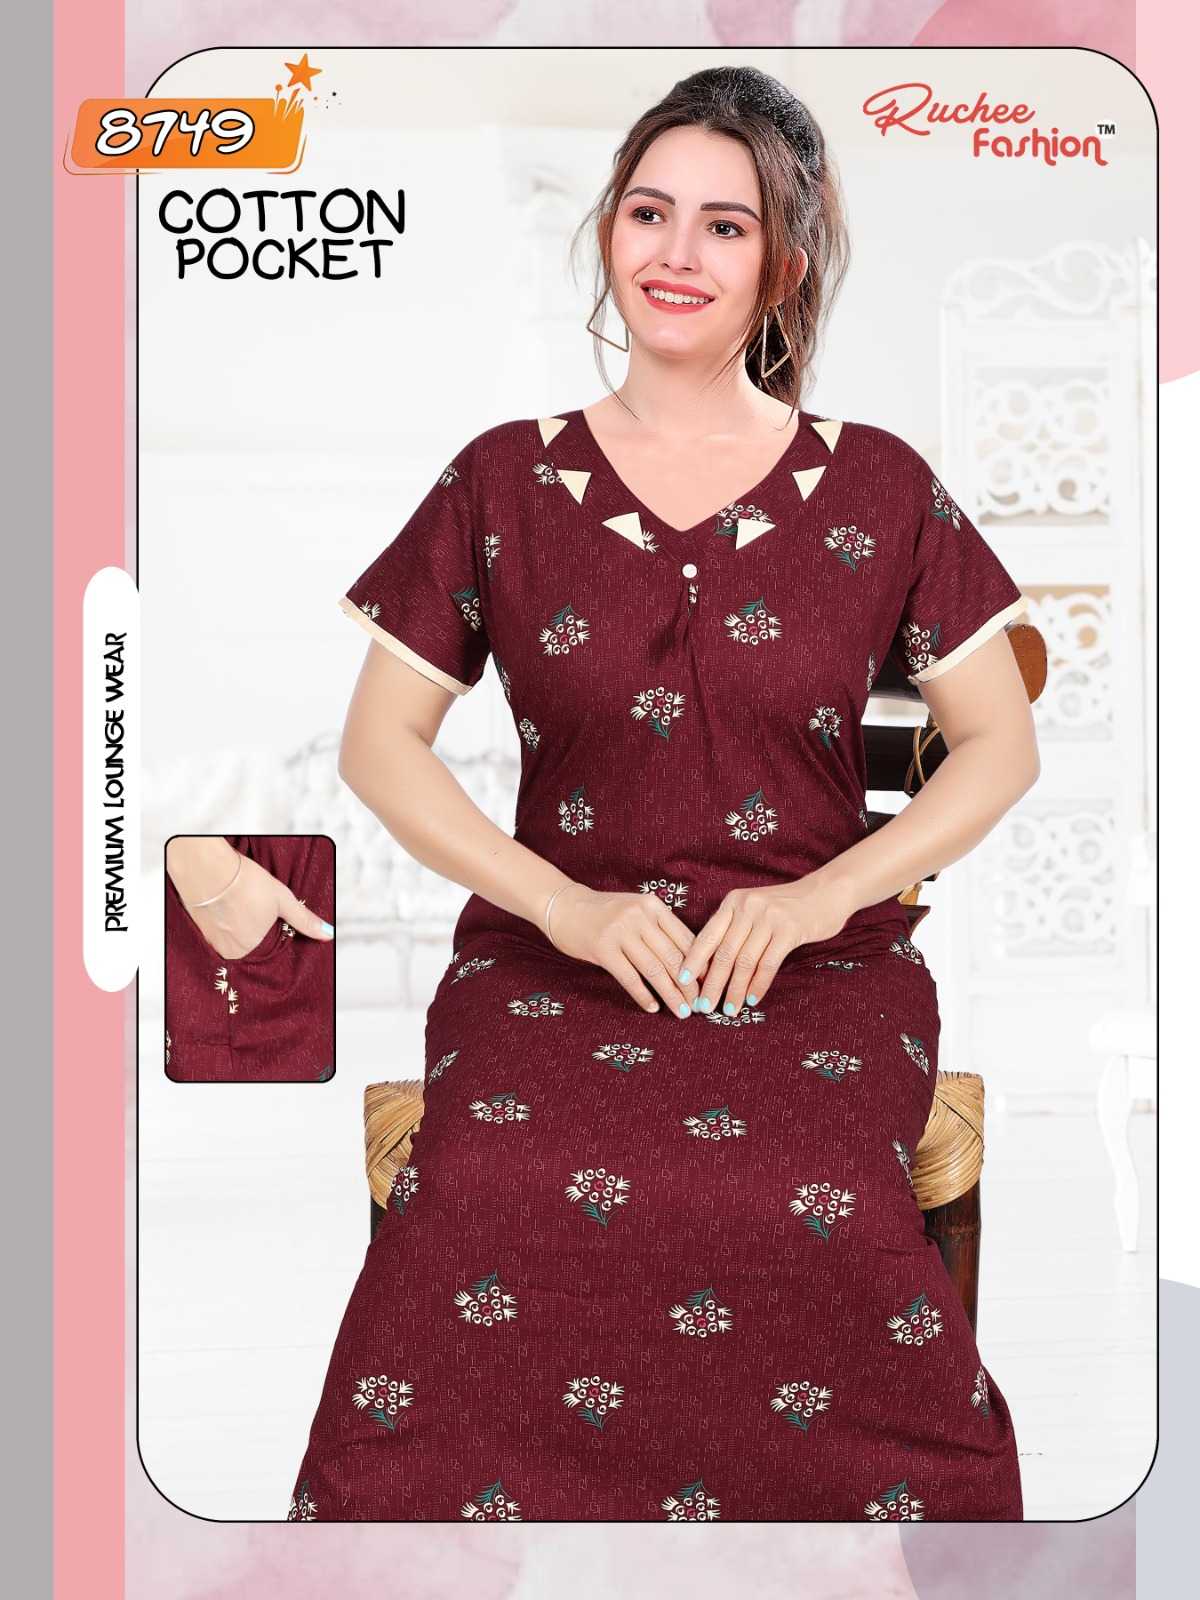 ruchee fashion cotton pocket 8746-8749 fancy women night gown